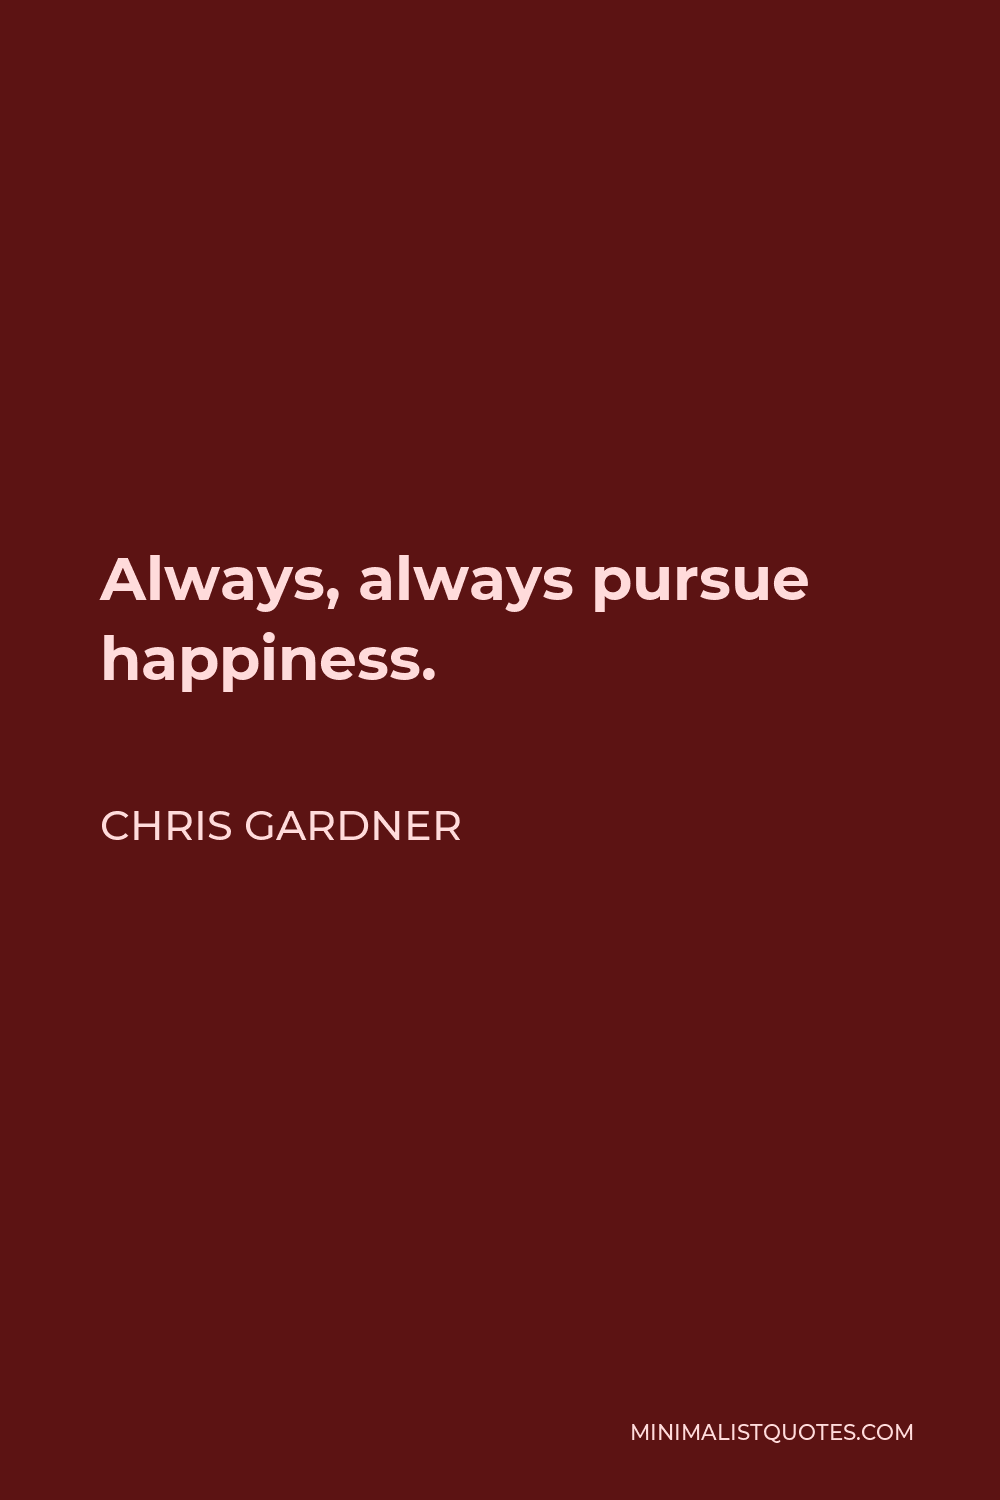 Chris Gardner Quote - Always, always pursue happiness.